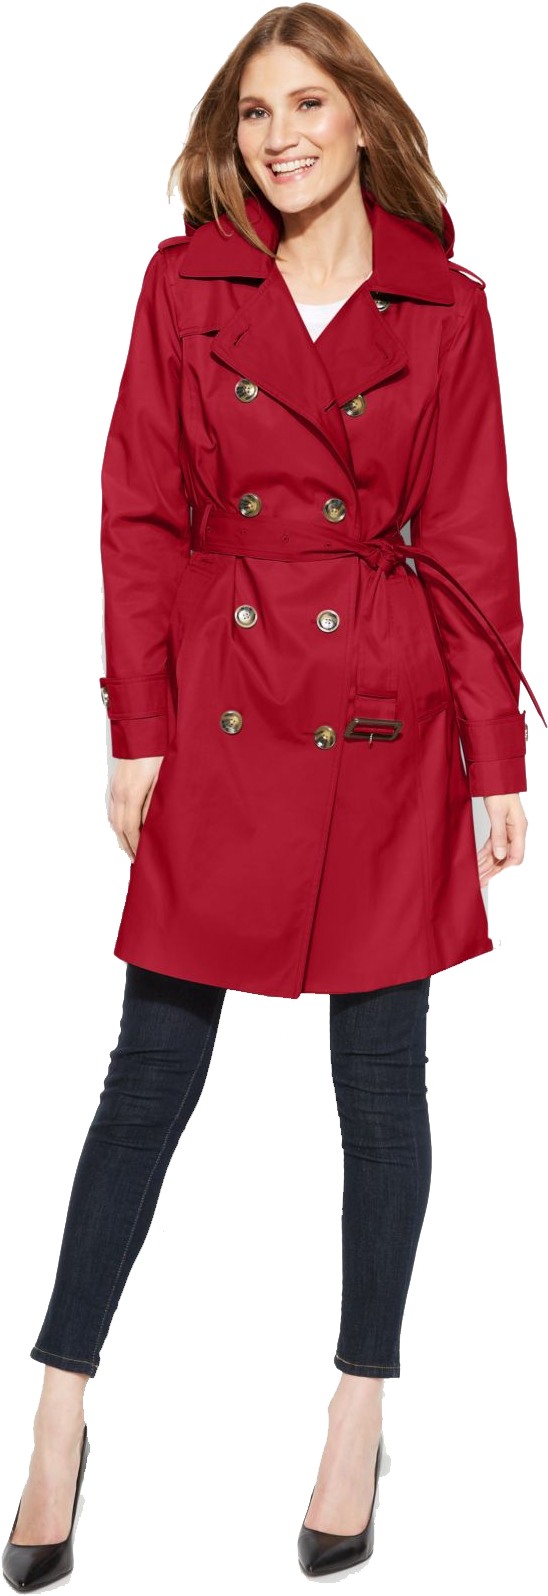 London Fog Chili Raincoat (1320x1616), Png Download